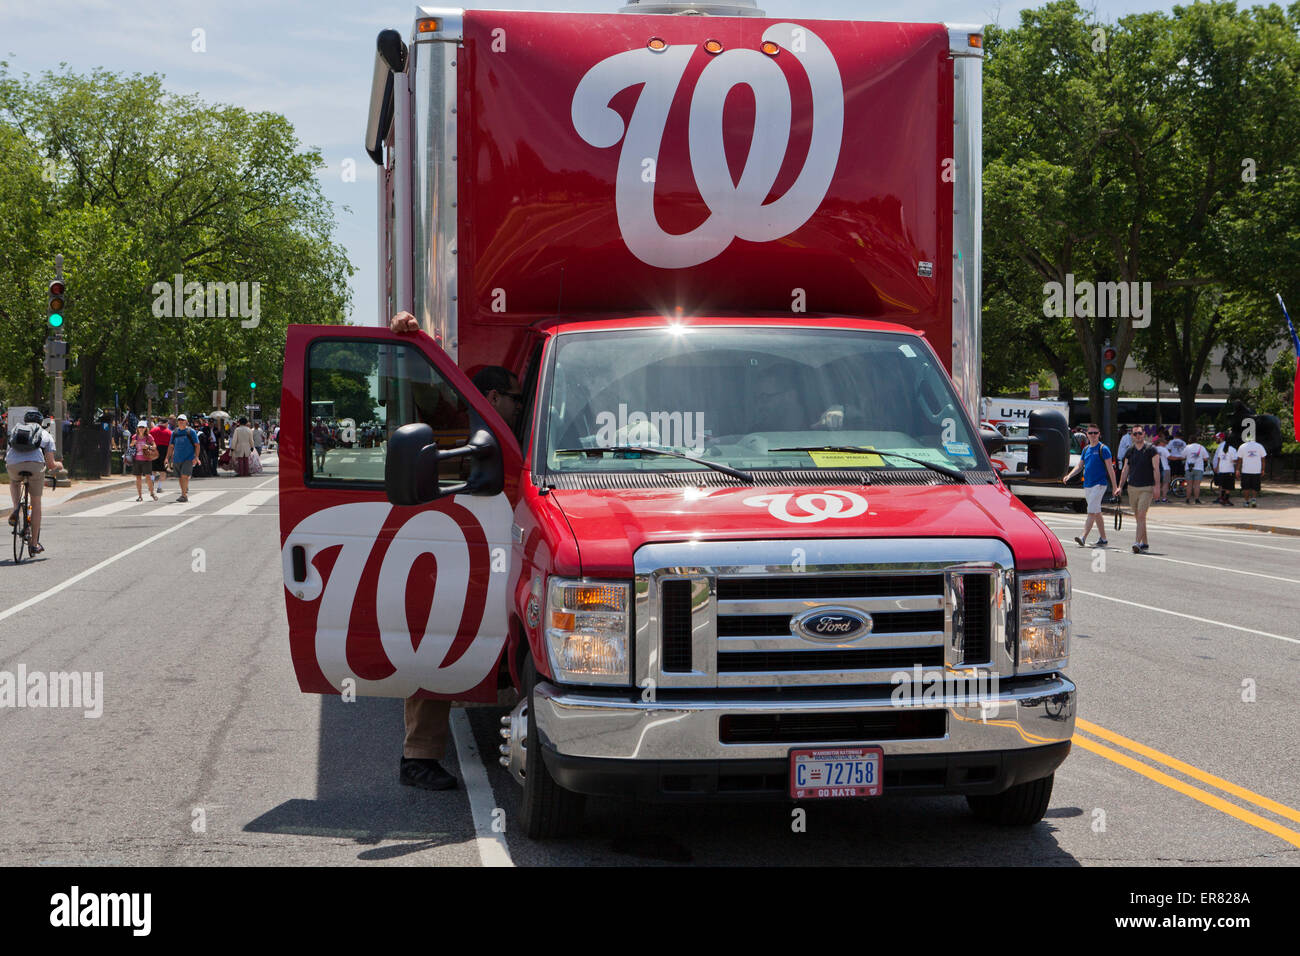 Washington Nationals baseball team promotion truck - Washington, DC USA Stock Photo